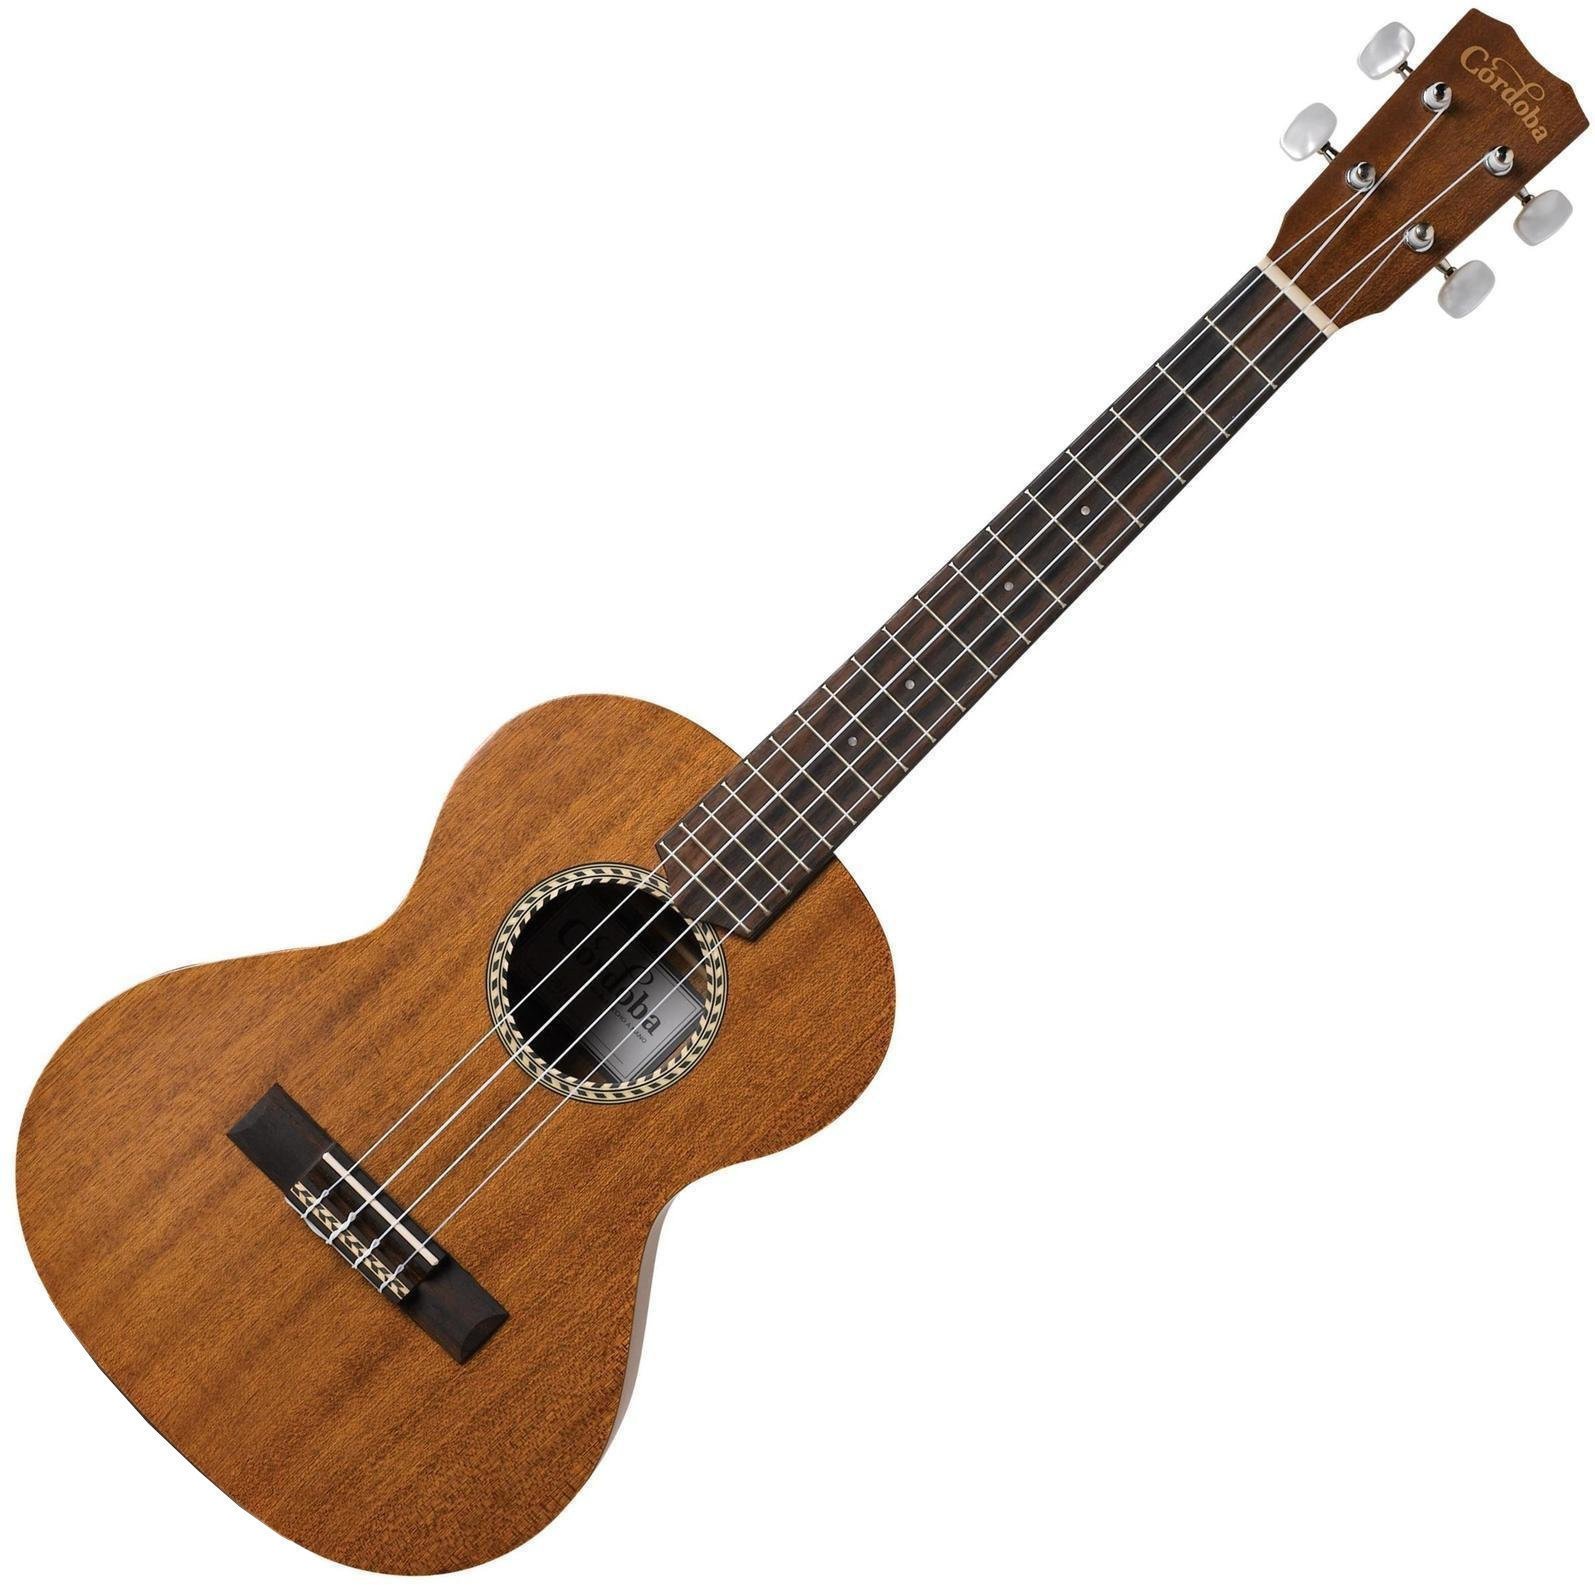 Tenori-ukulele Cordoba 20TM Tenori-ukulele Natural